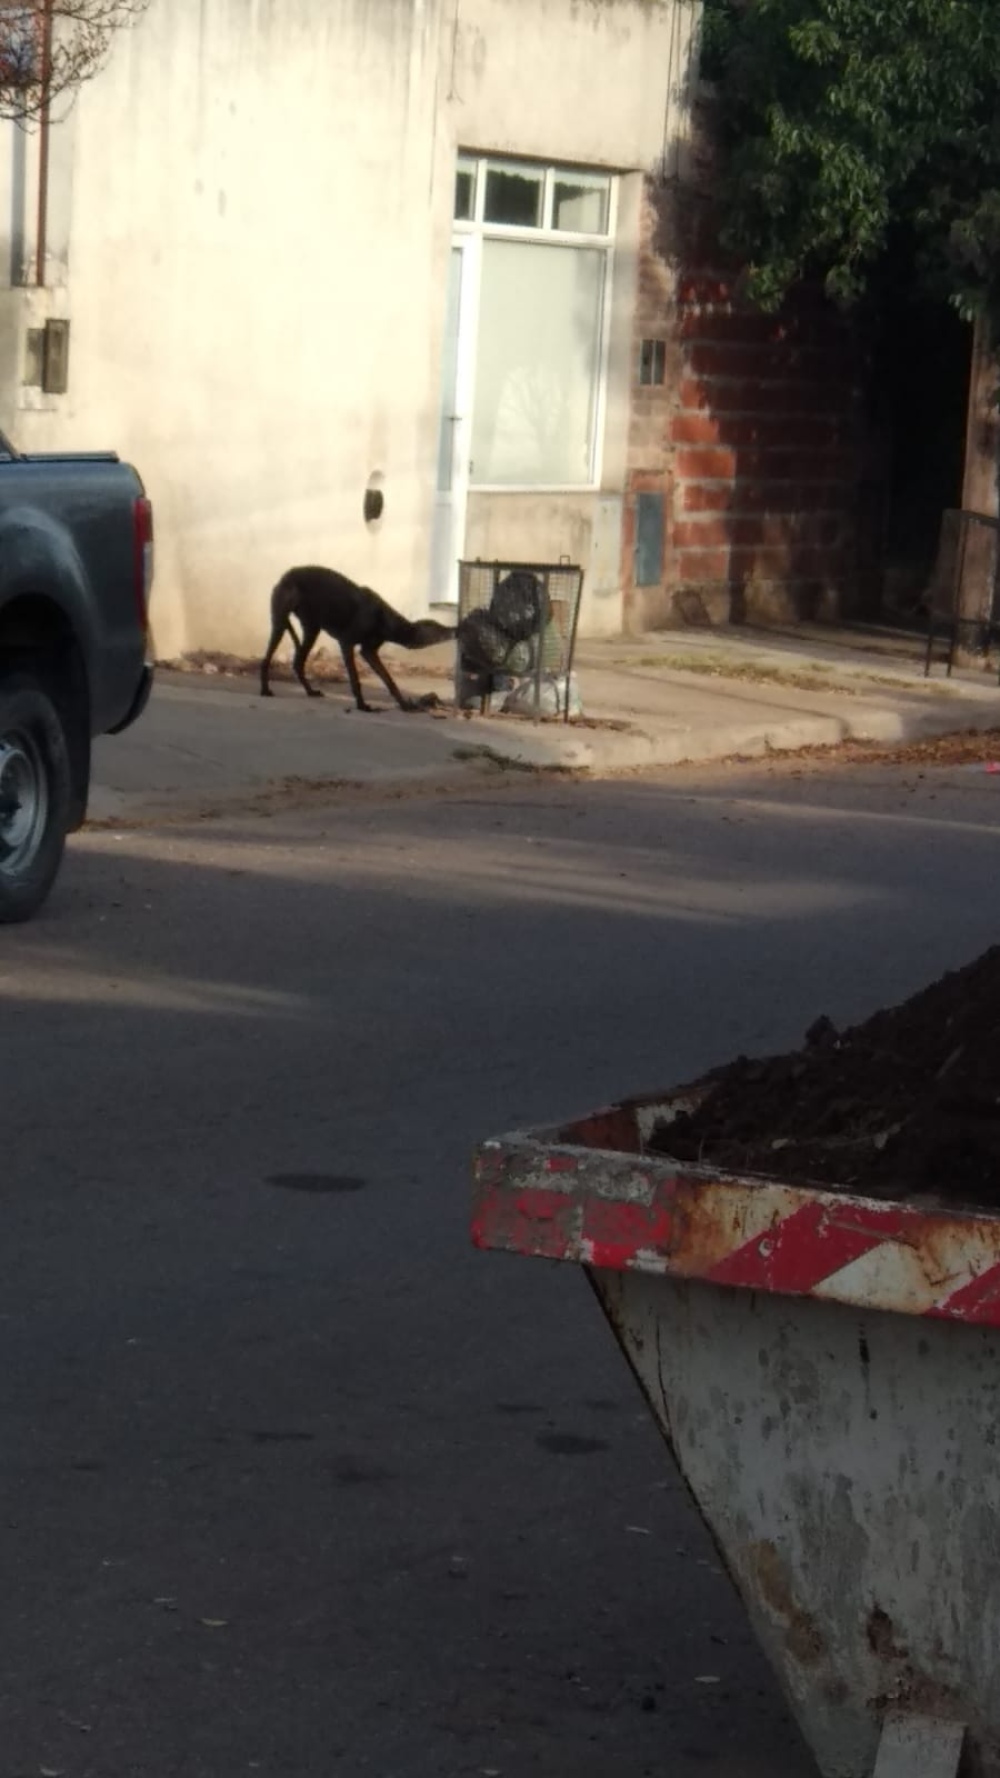 Reclaman por vecinos que tiran basura en la calle y dejan perros sueltos